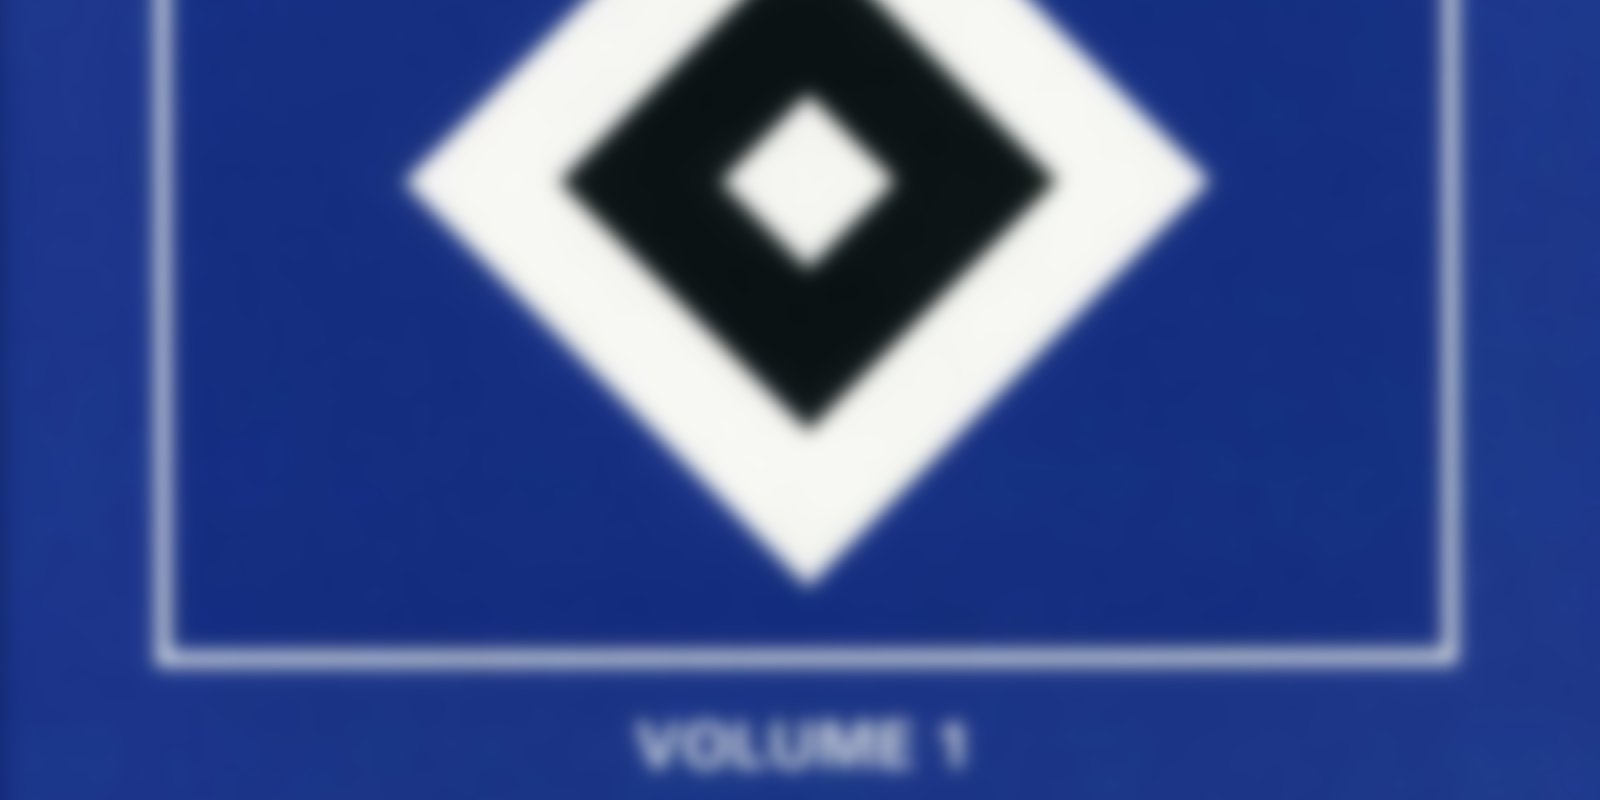 HSV - Die besten Spiele der Vereinsgeschichte - Teil 1